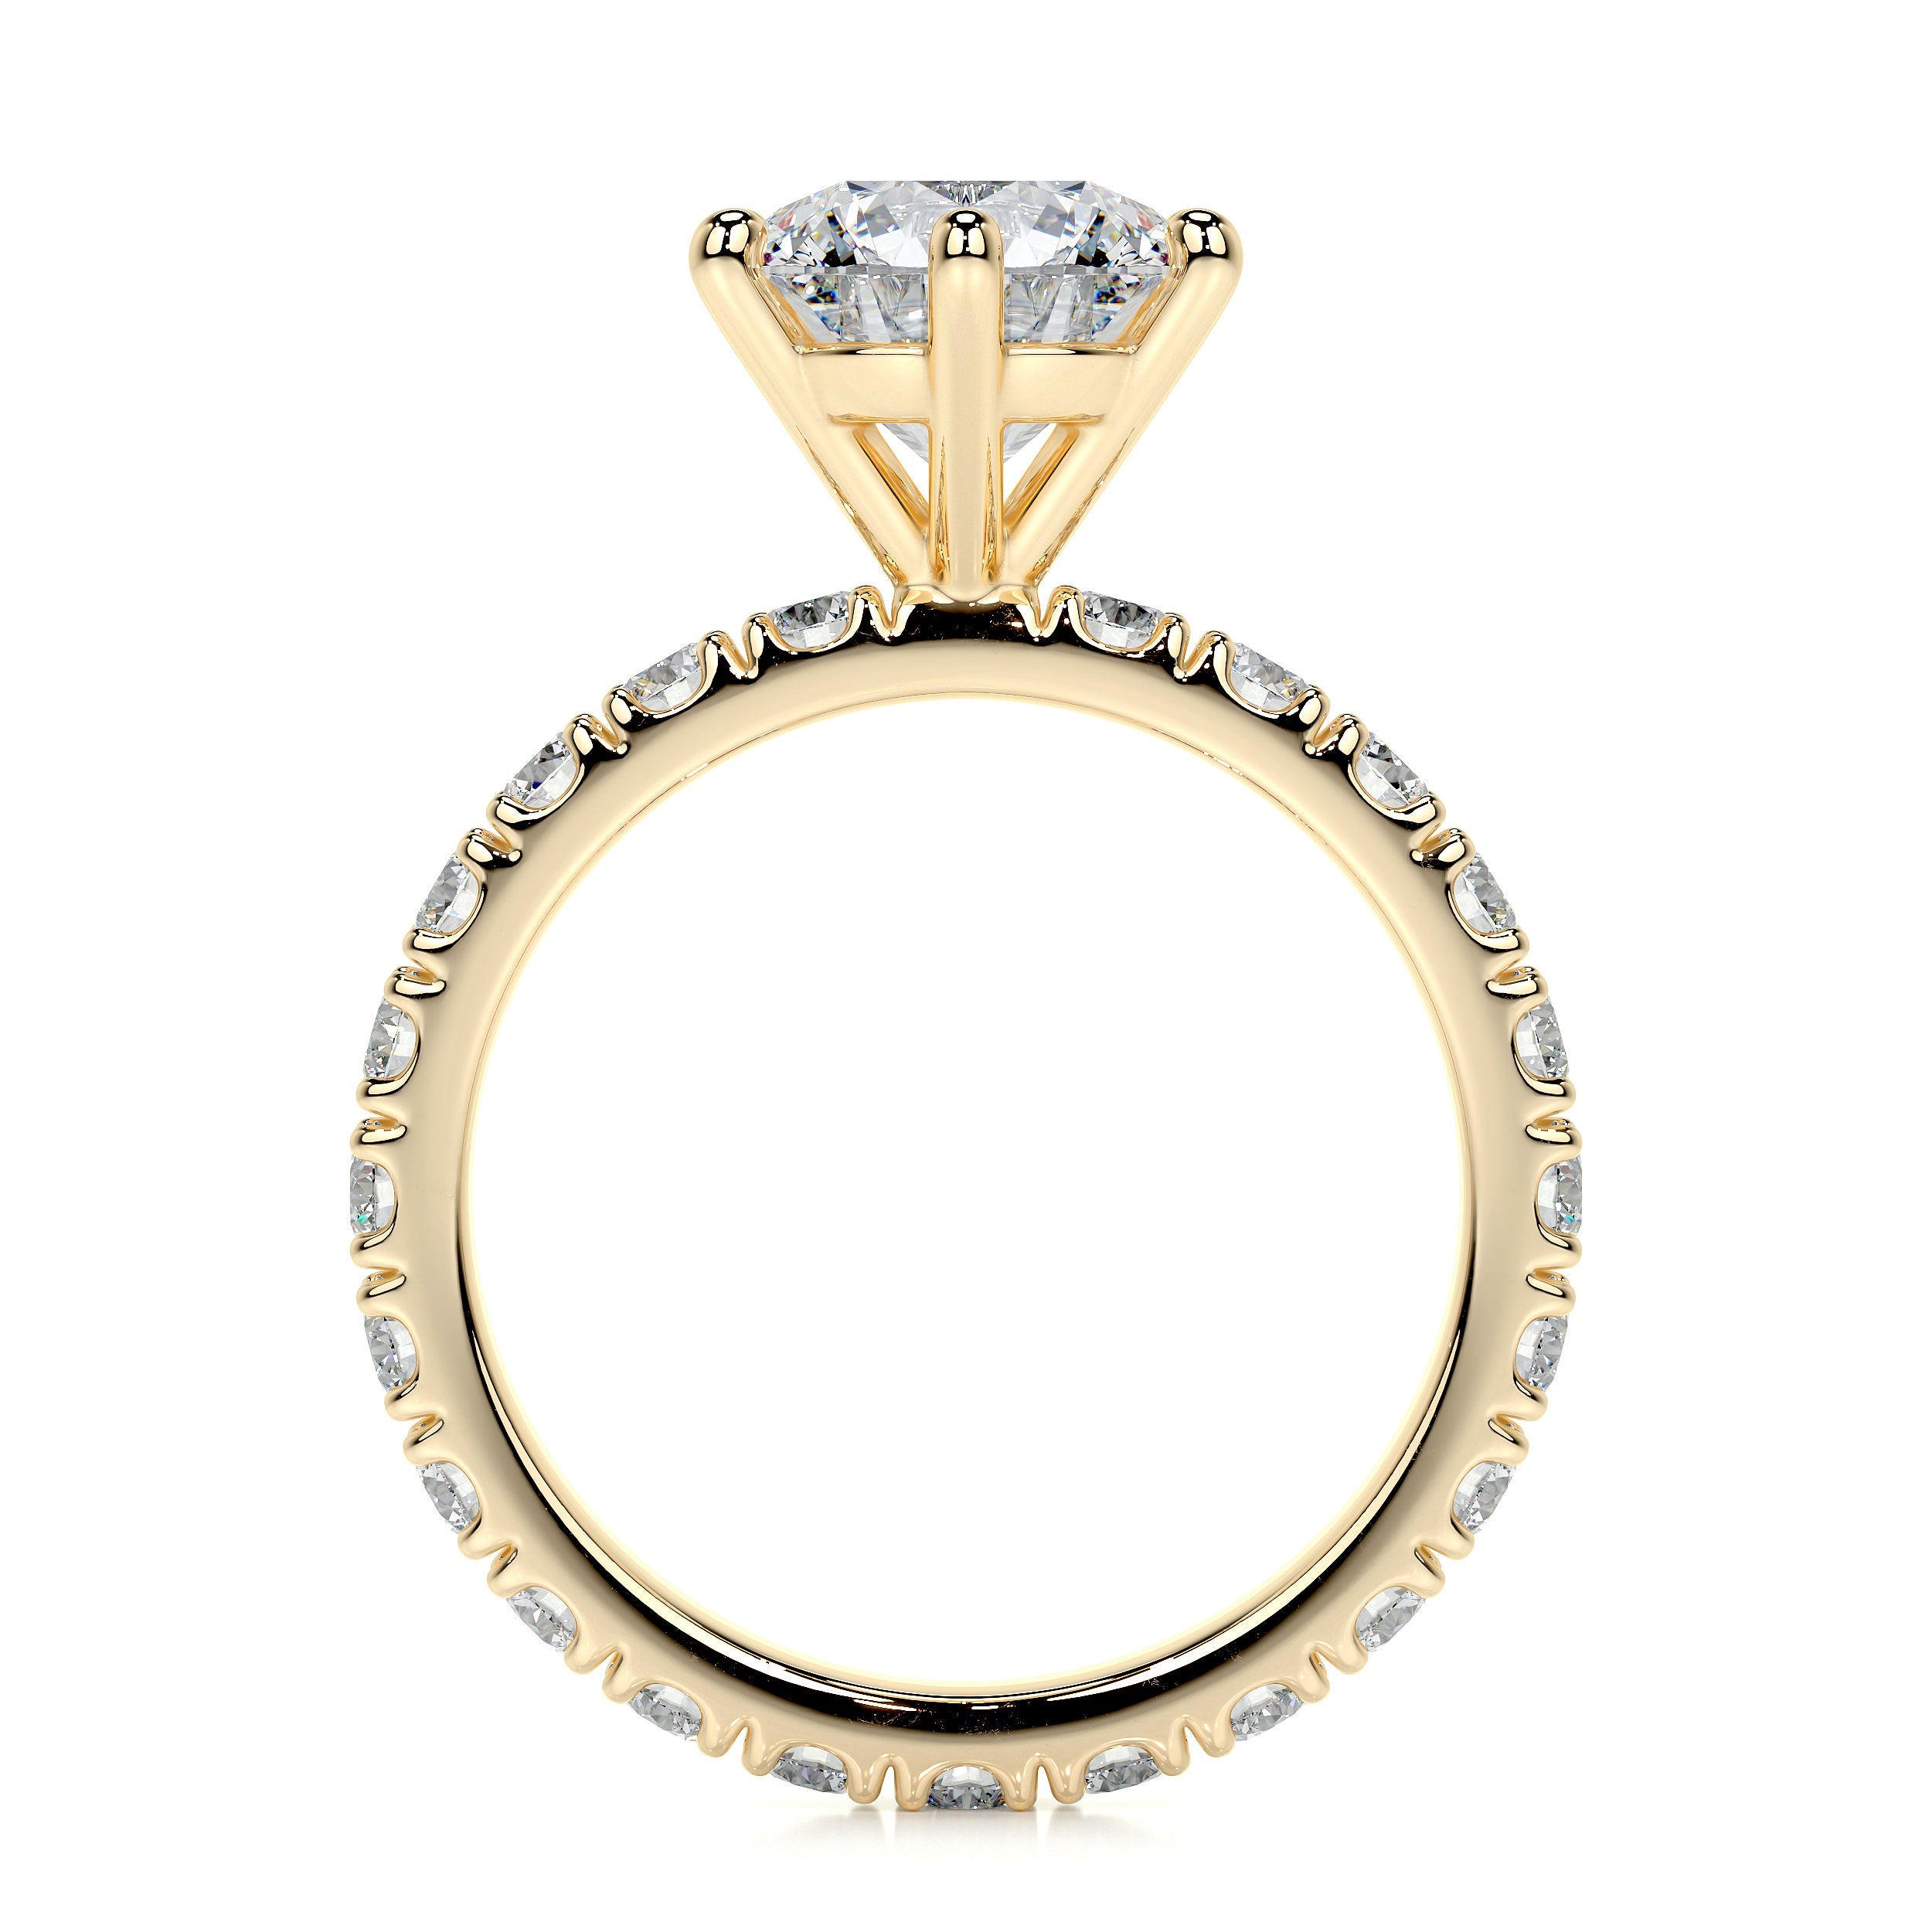 Jane Lab Grown Diamond Ring   (2.25 Carat) -18K Yellow Gold